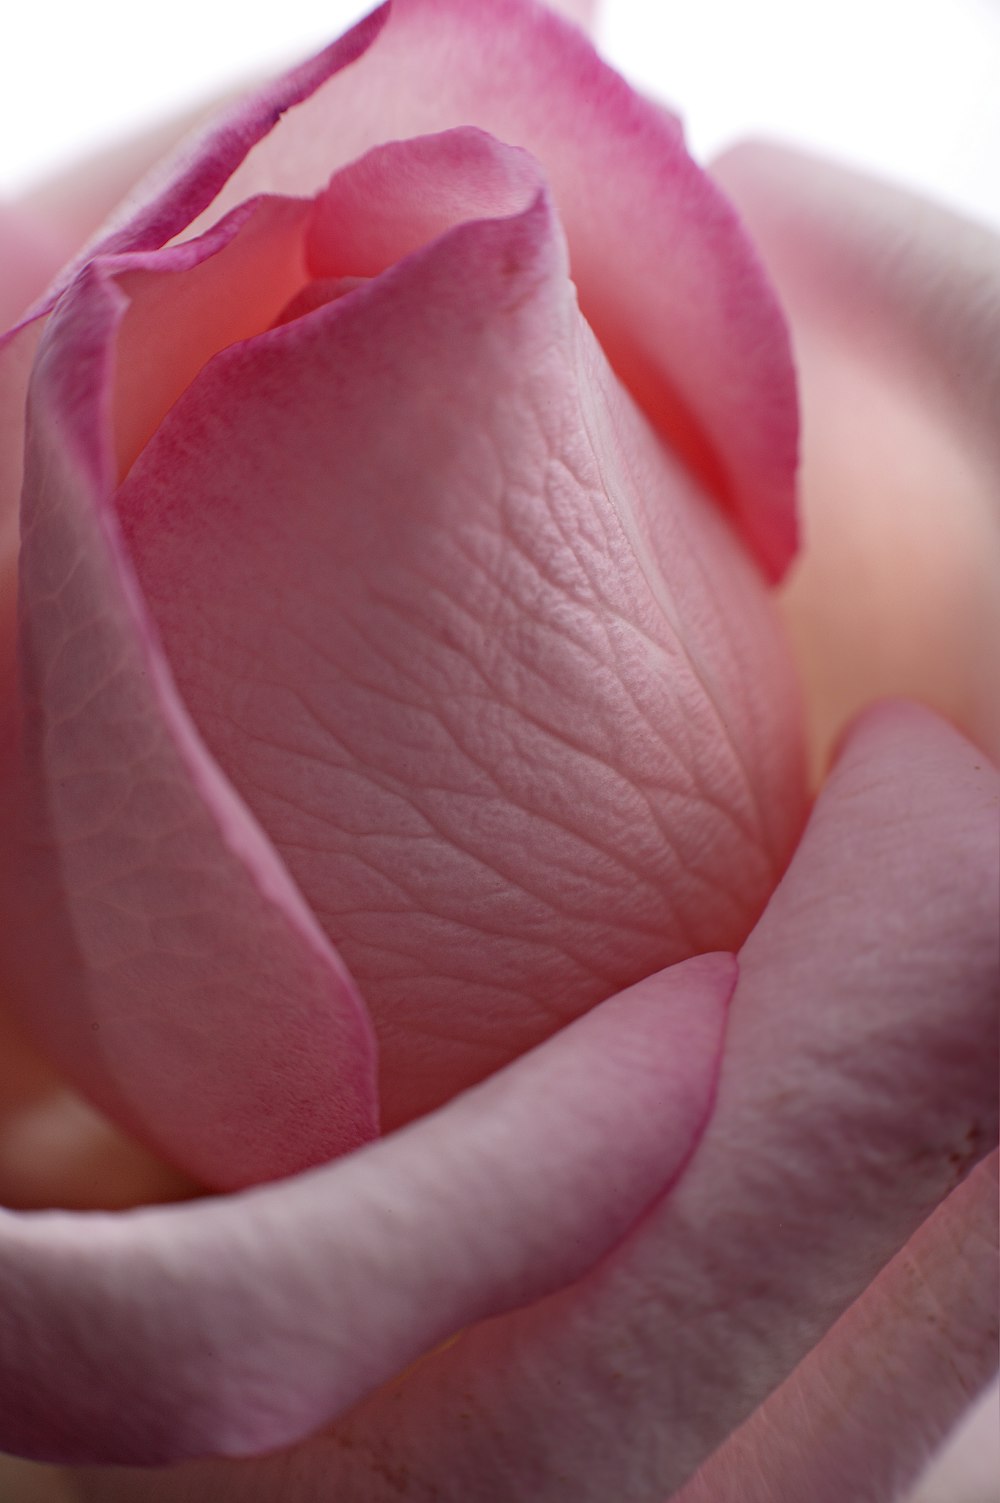 pink flower petals in macro photography